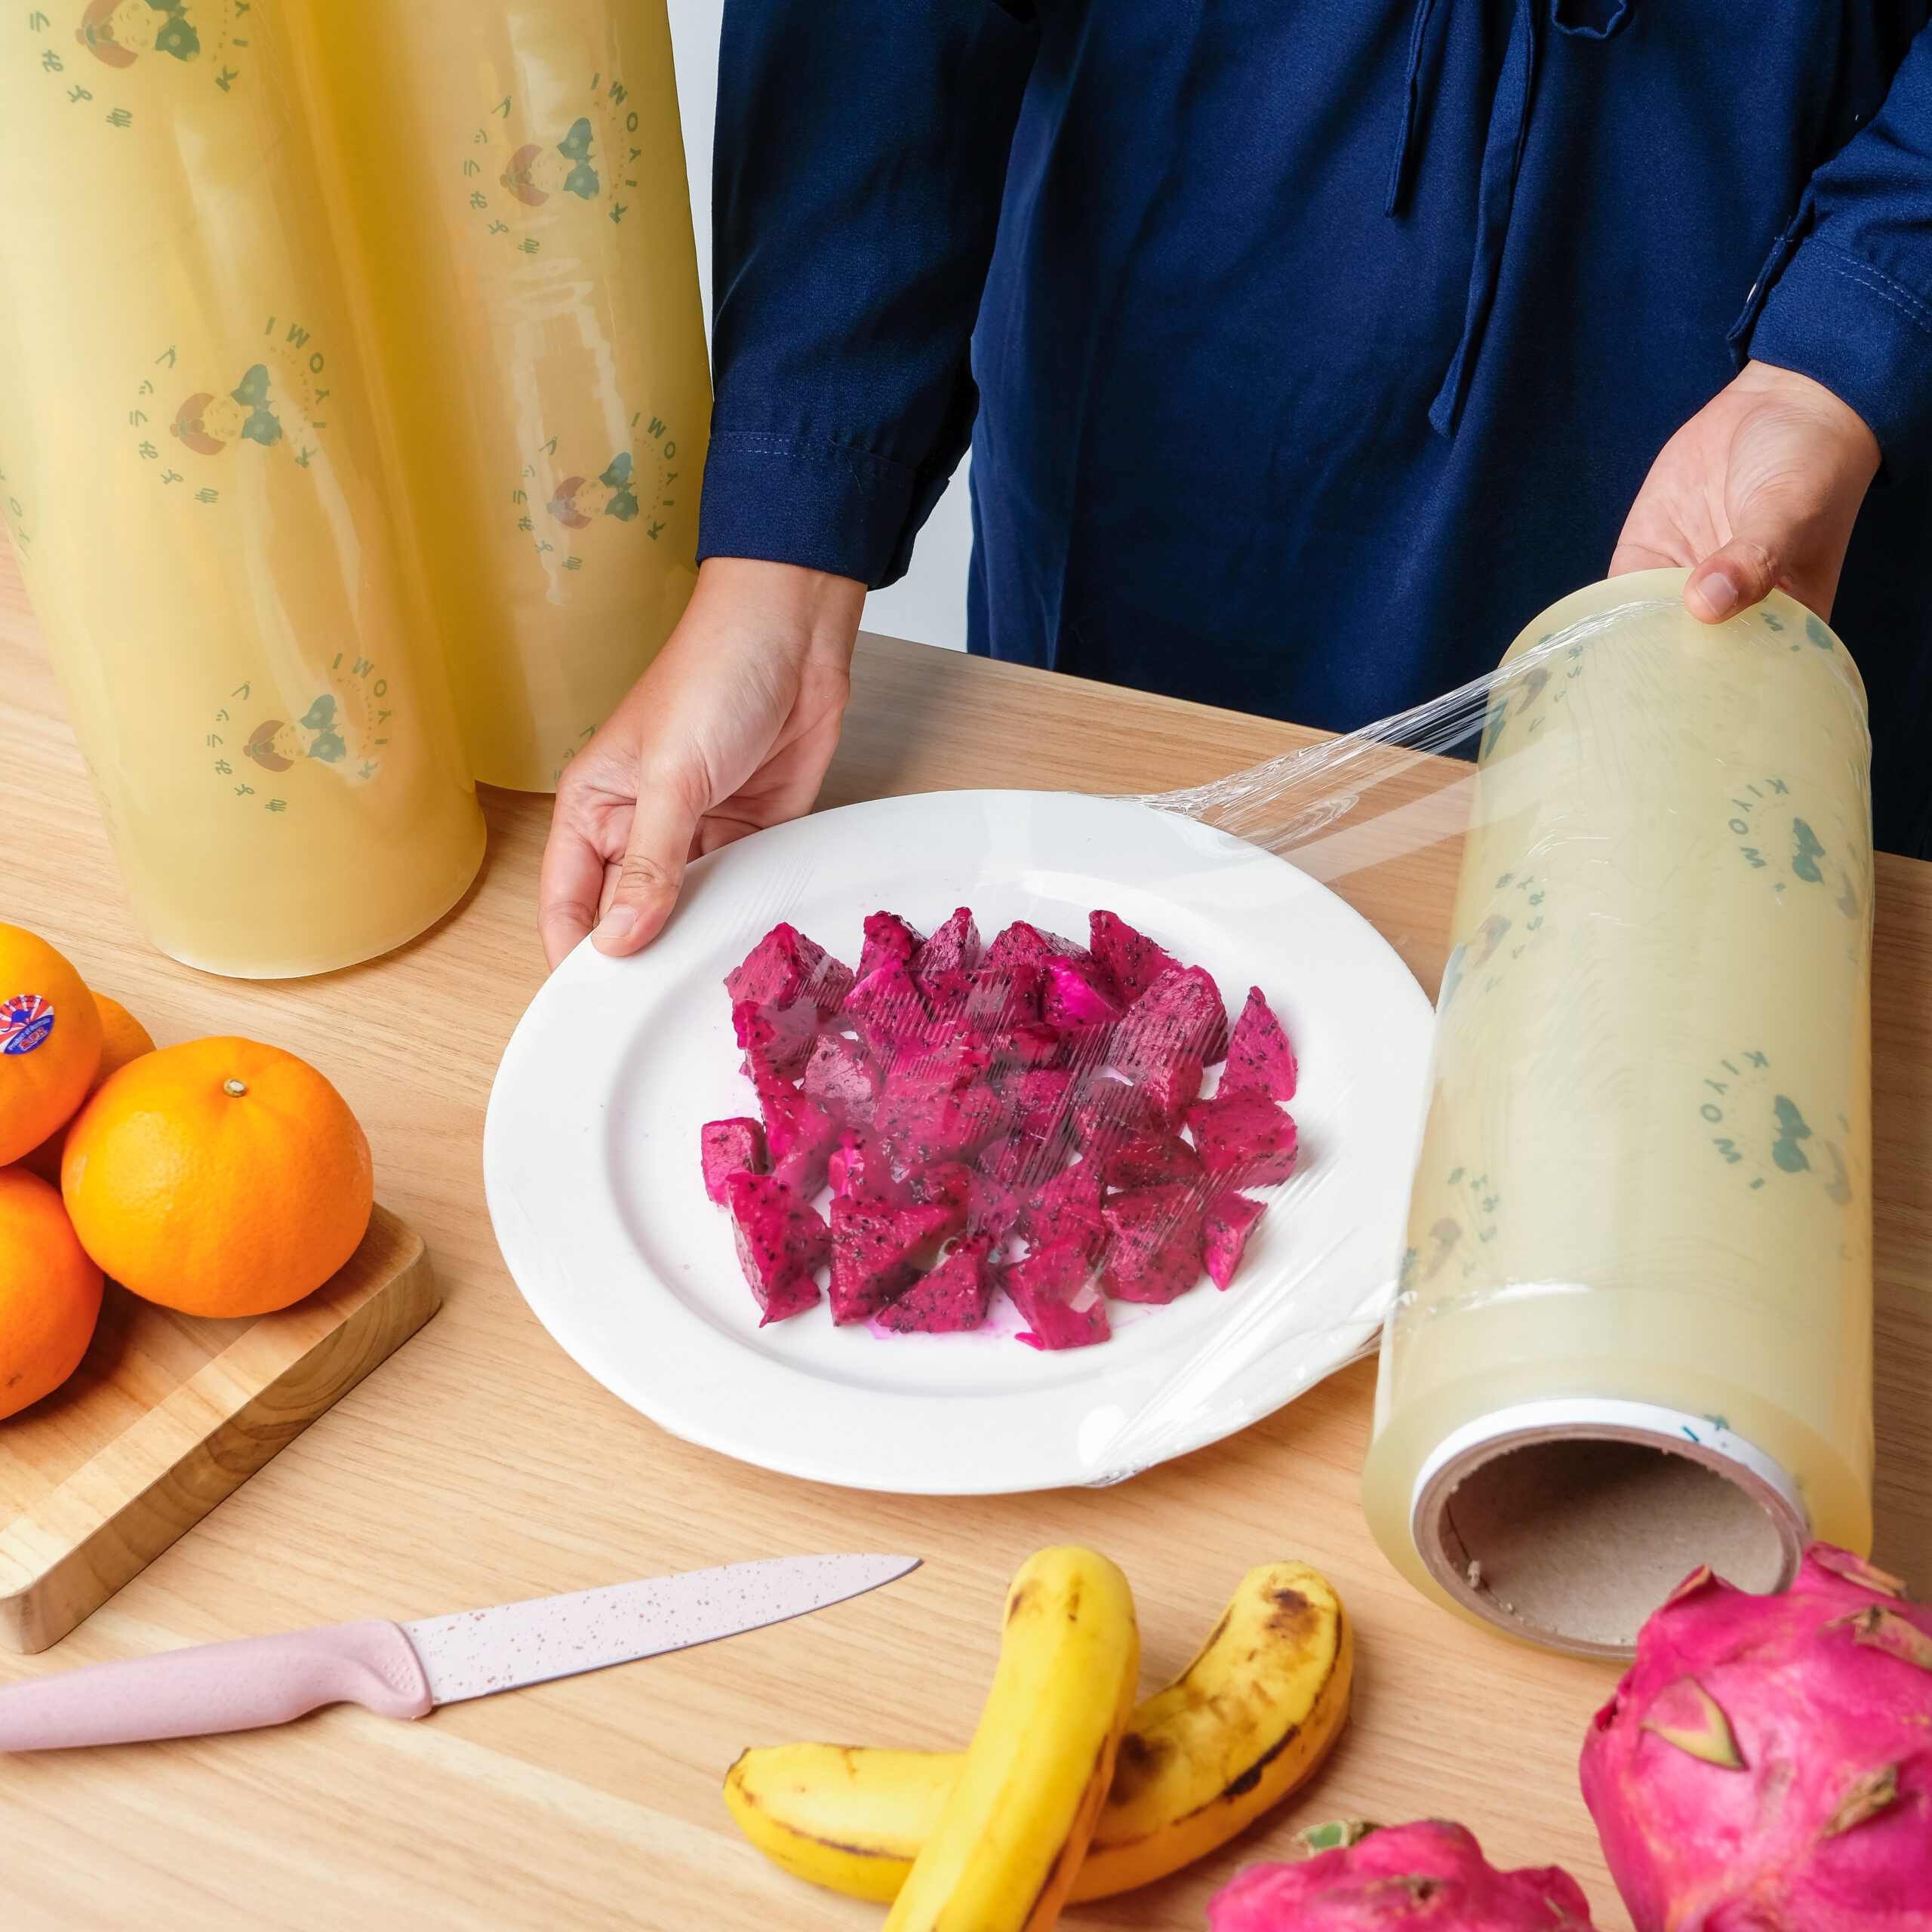 kiyomi sangat lentur plastik wrapping yang aman dipakai untuk buah lebih darai best fresh raypin dan total